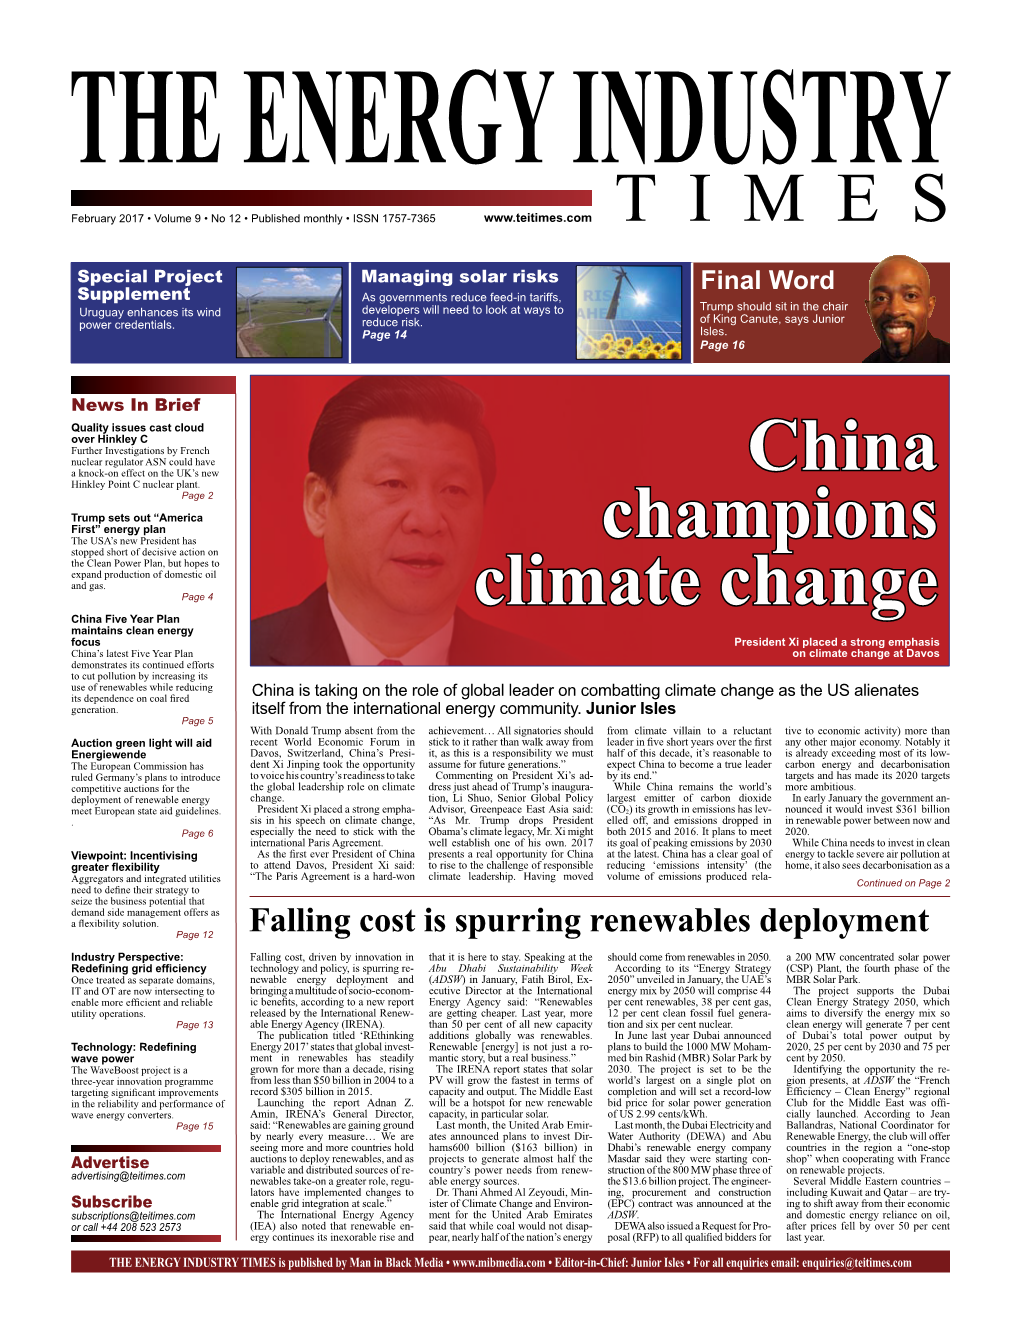 China Champions Climate Change